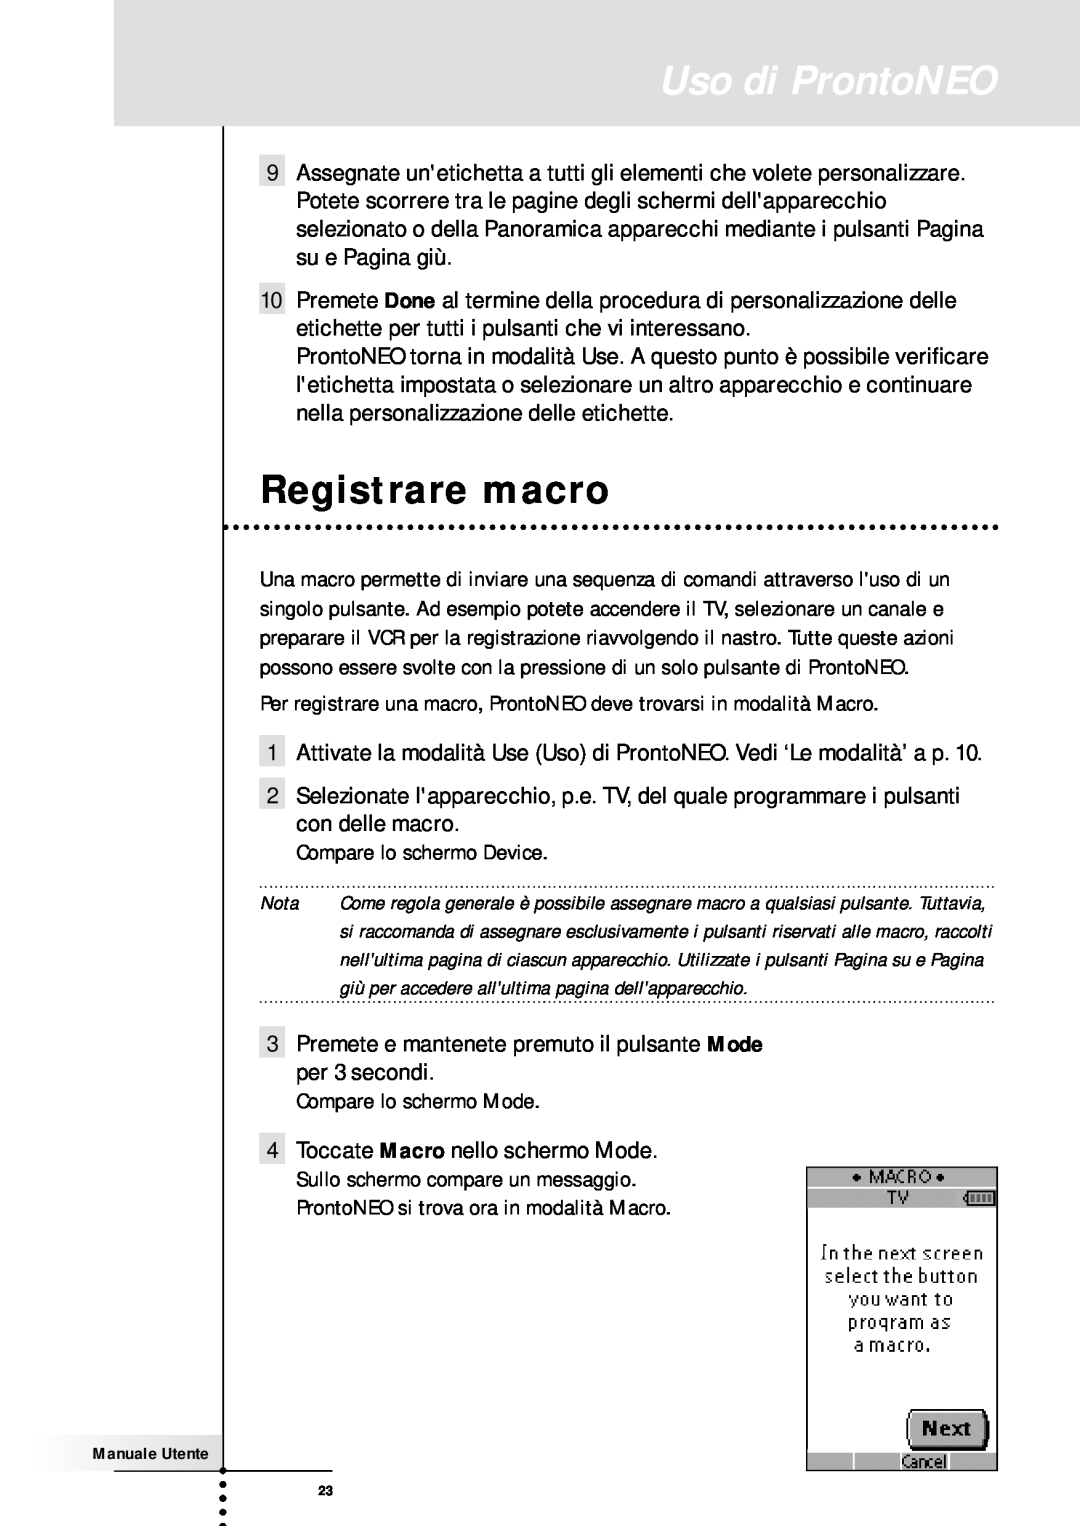 Memorex SBC RU 930 manual Registrare macro, Uso di ProntoNEO 